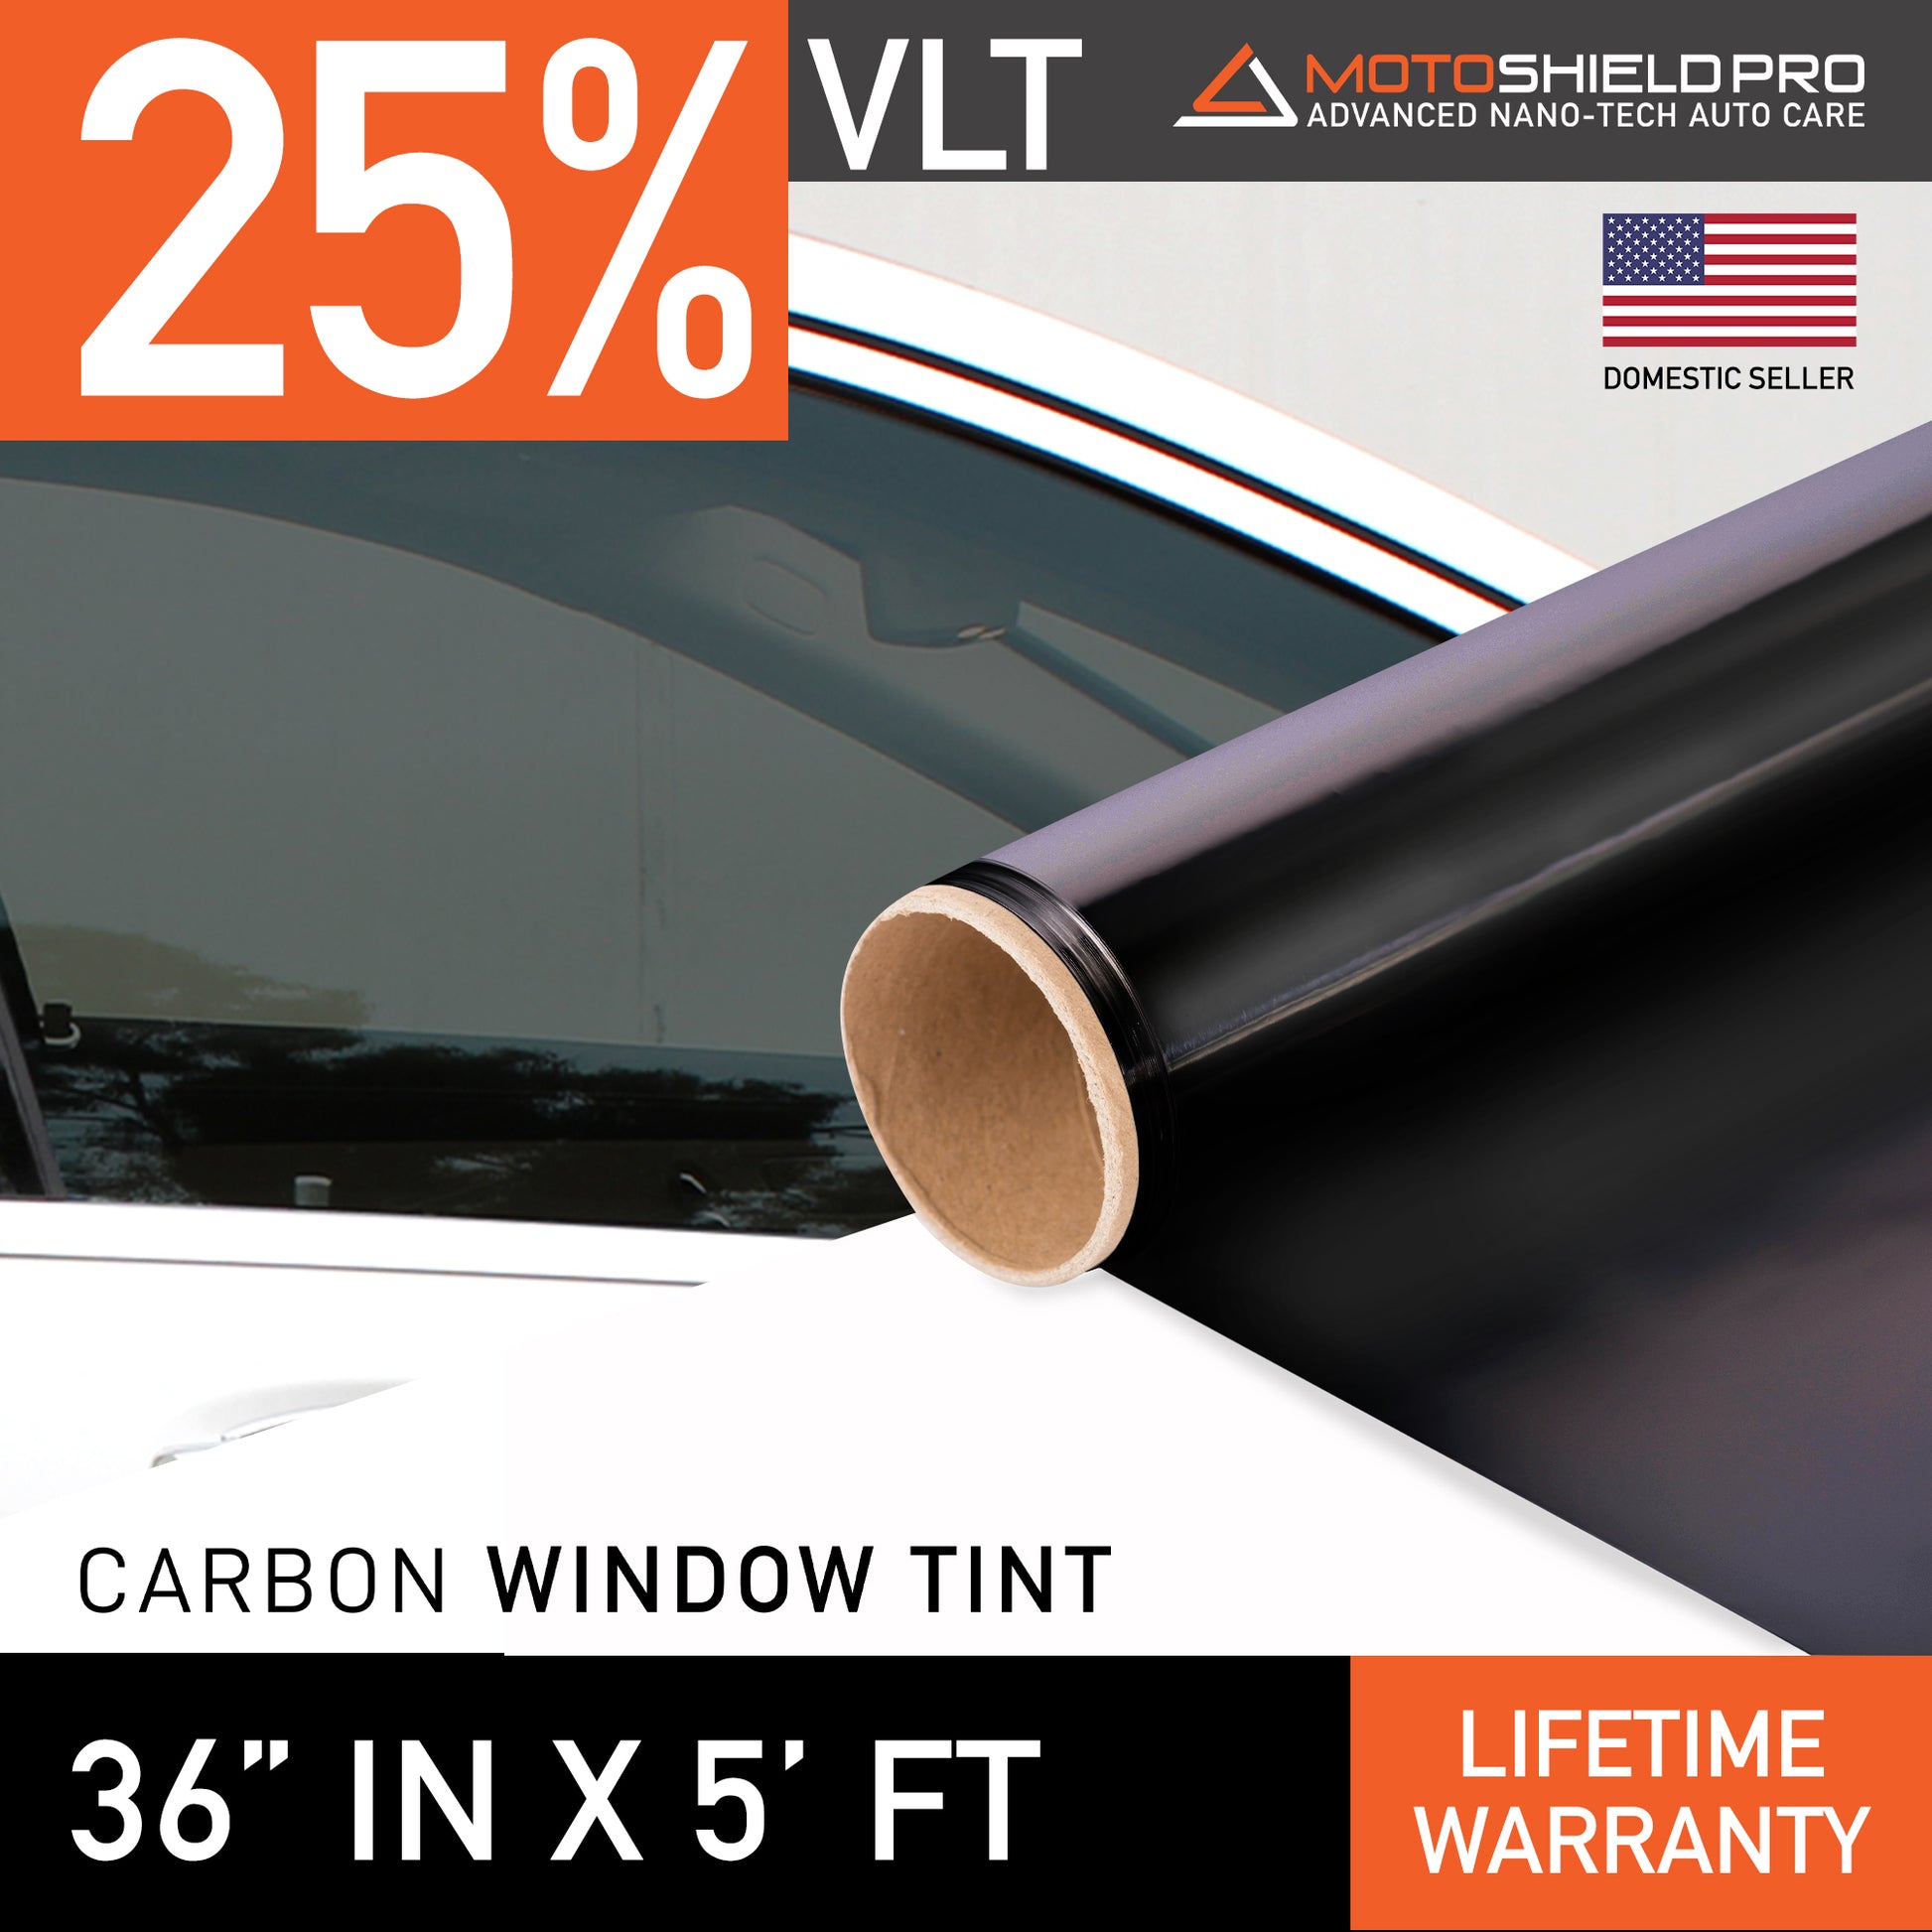 MotoShield Pro Carbon Window Tint - 36" in x 5' ft Roll + Lifetime Warranty